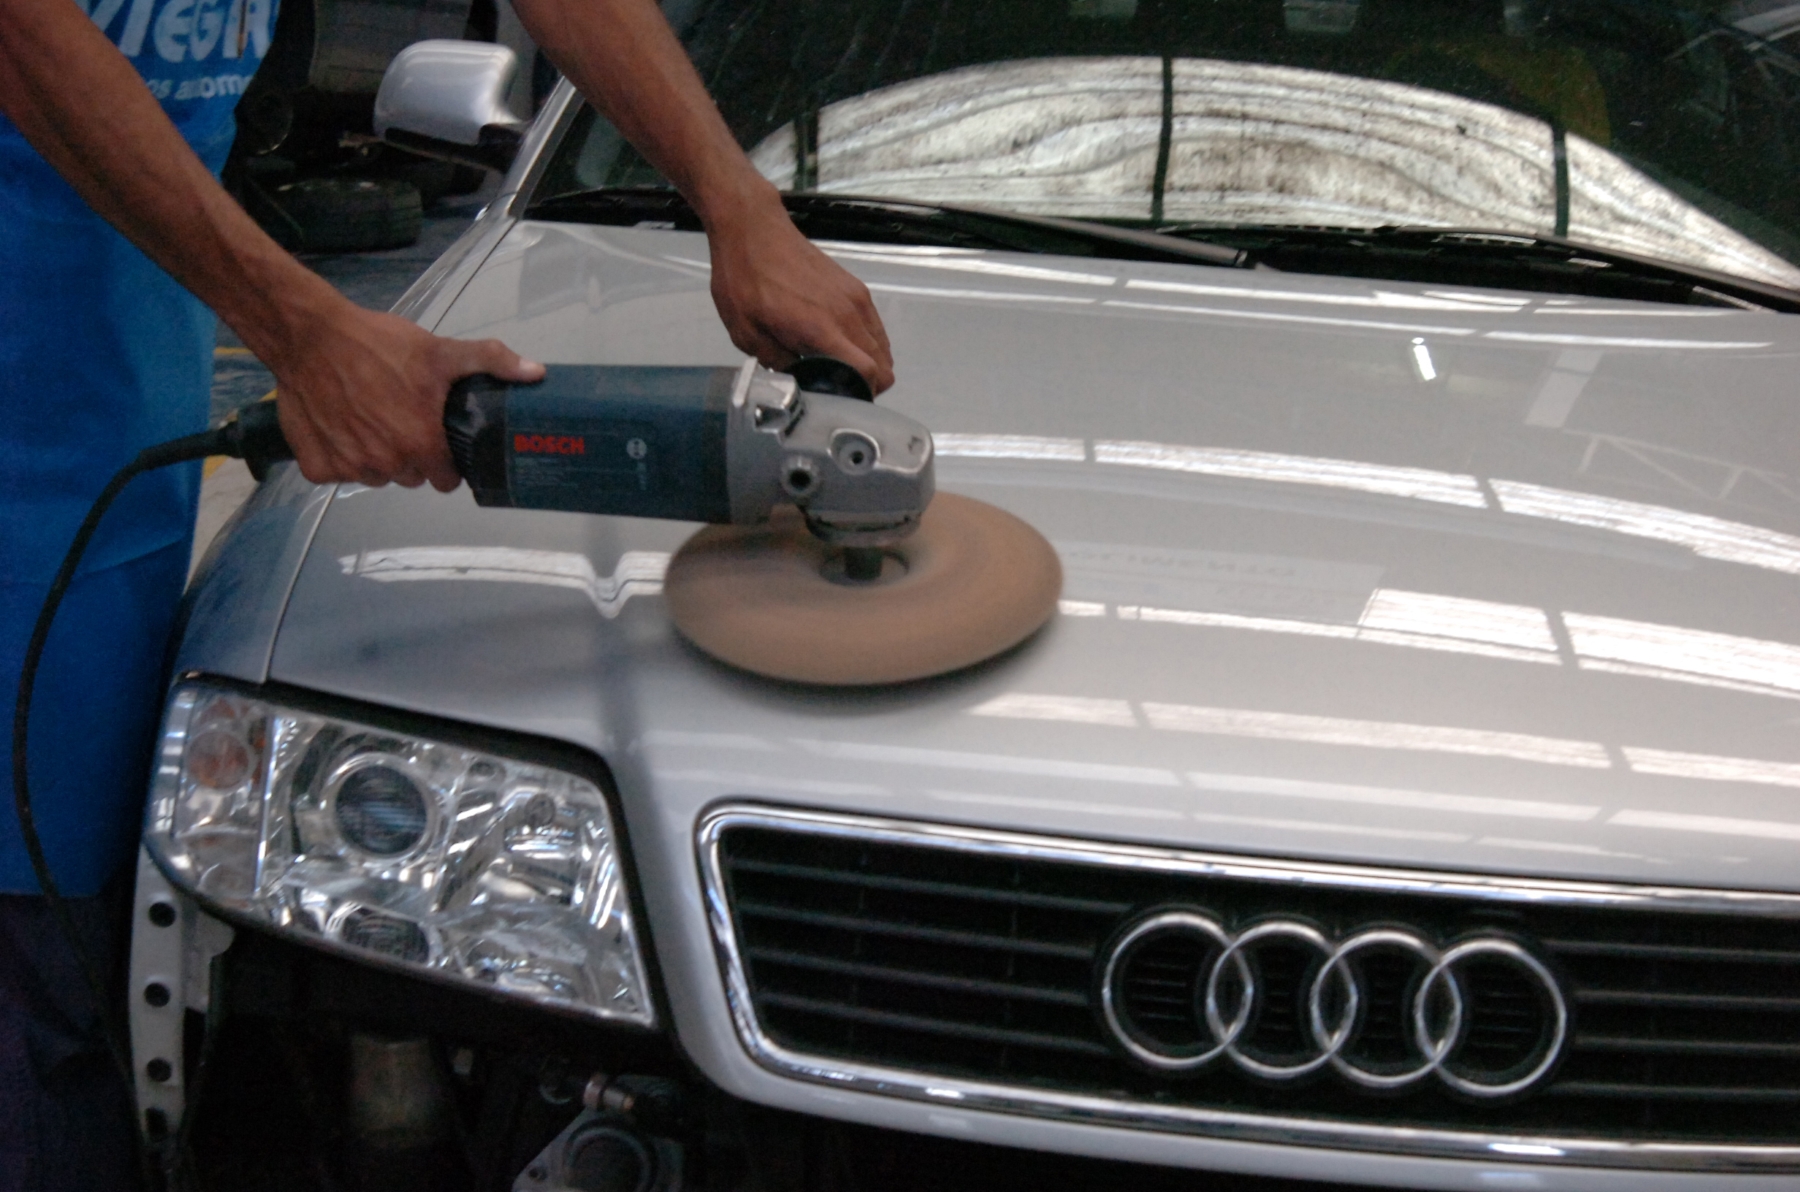 Polimento de pintura feito em modelo Audi em oficina homem com máquina de polir; para matéria de cuidados com o carro em dias de calor extremo.